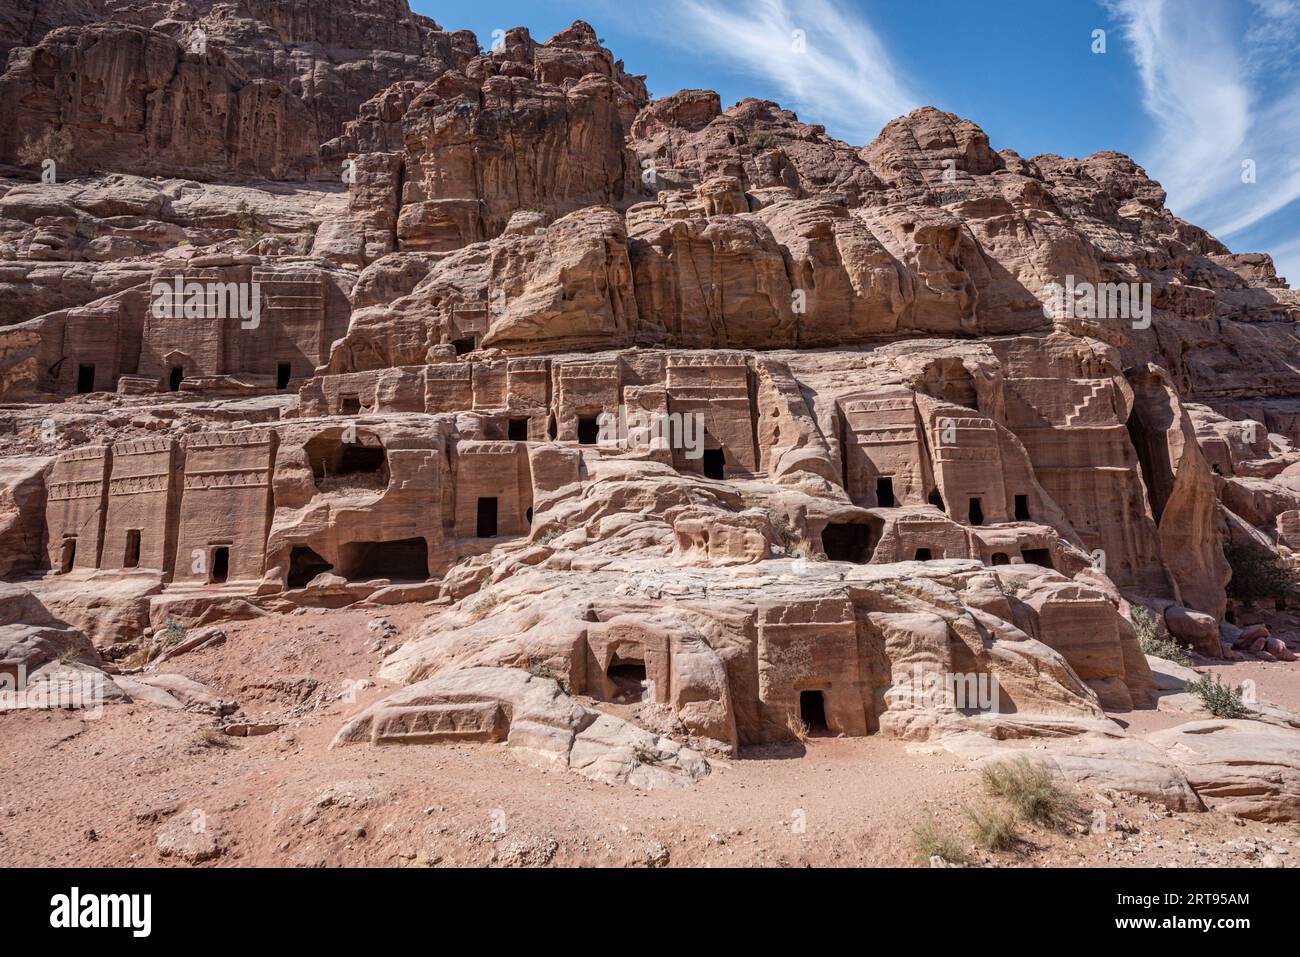 Bâtiments taillés dans la roche sur le site archéologique de Petra, Jordanie Banque D'Images